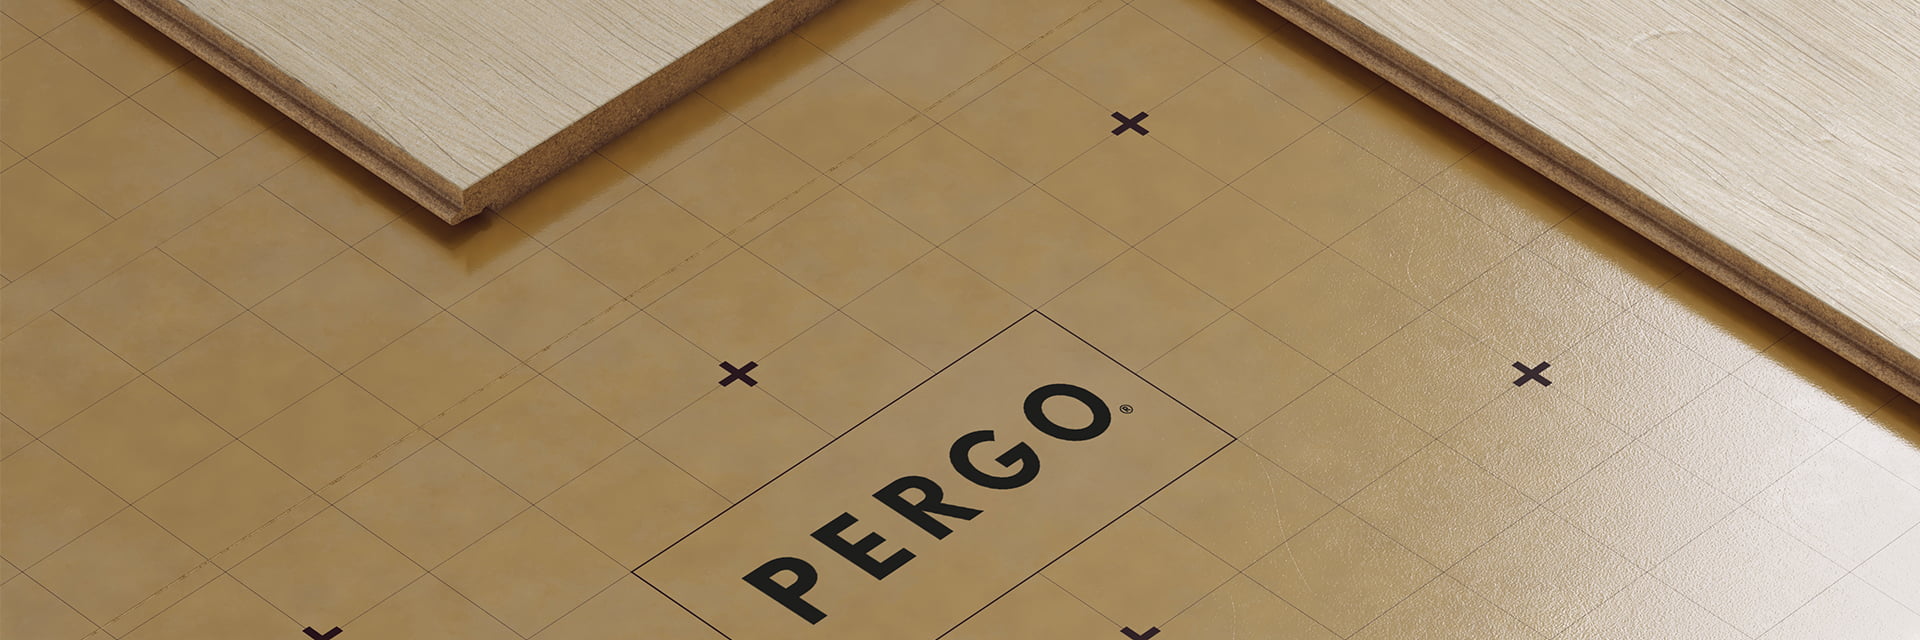 wyciszający podkład marki Pergo pod beżową podłogą laminowaną